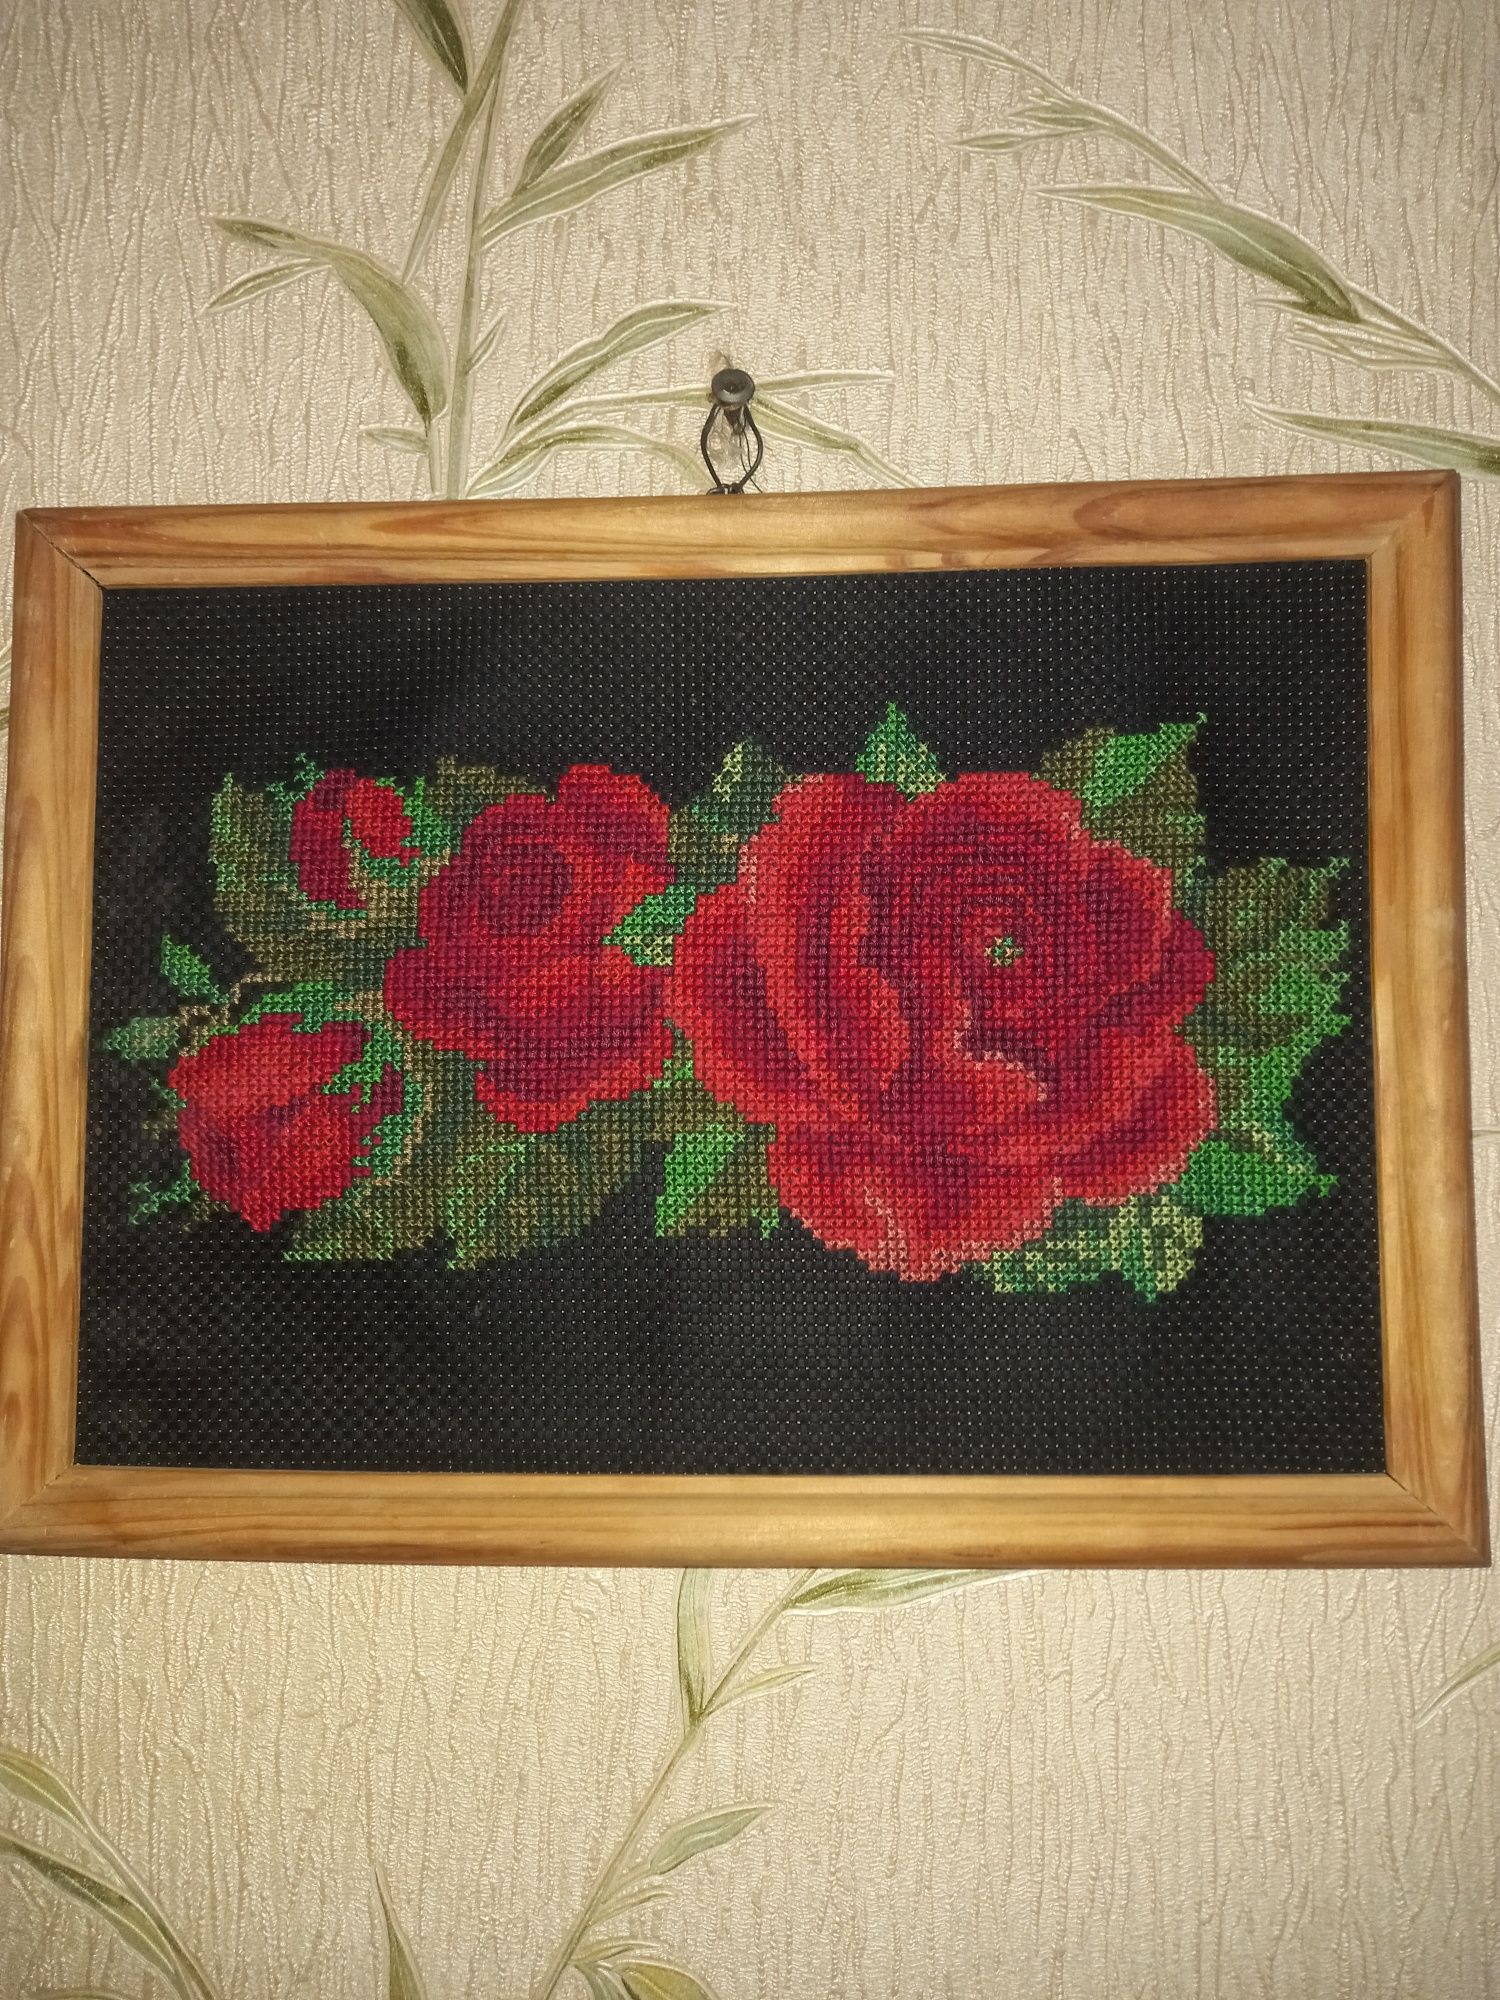 Продам картину "Розы на черном"